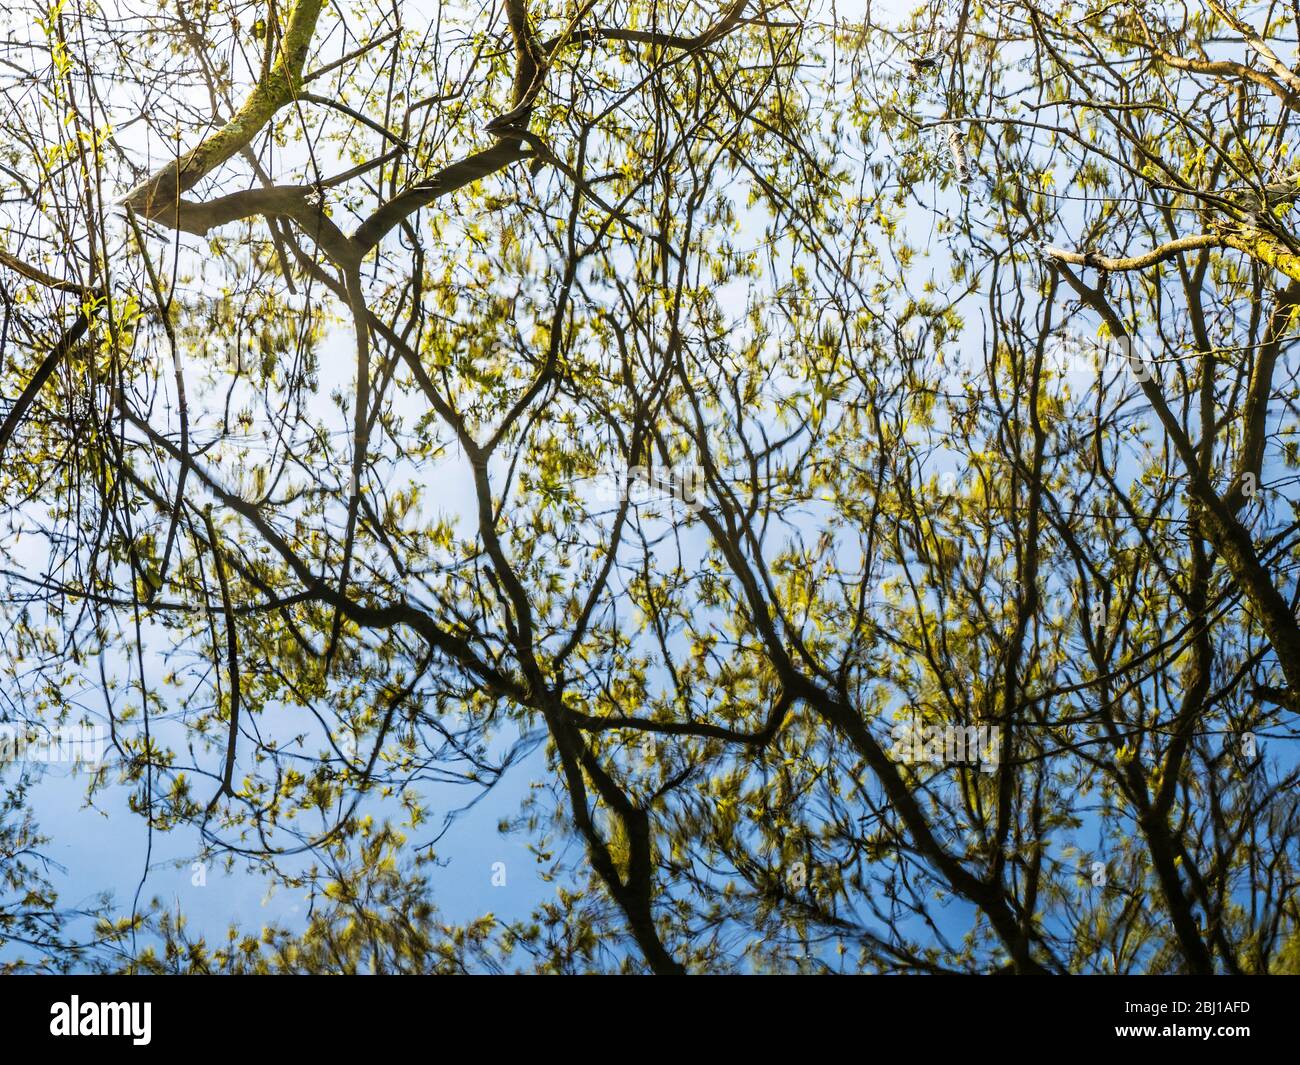 Ein abstraktes Bild von Ästen und Zweigen, die sich im stillen Wasser eines Sees spiegeln. Stockfoto